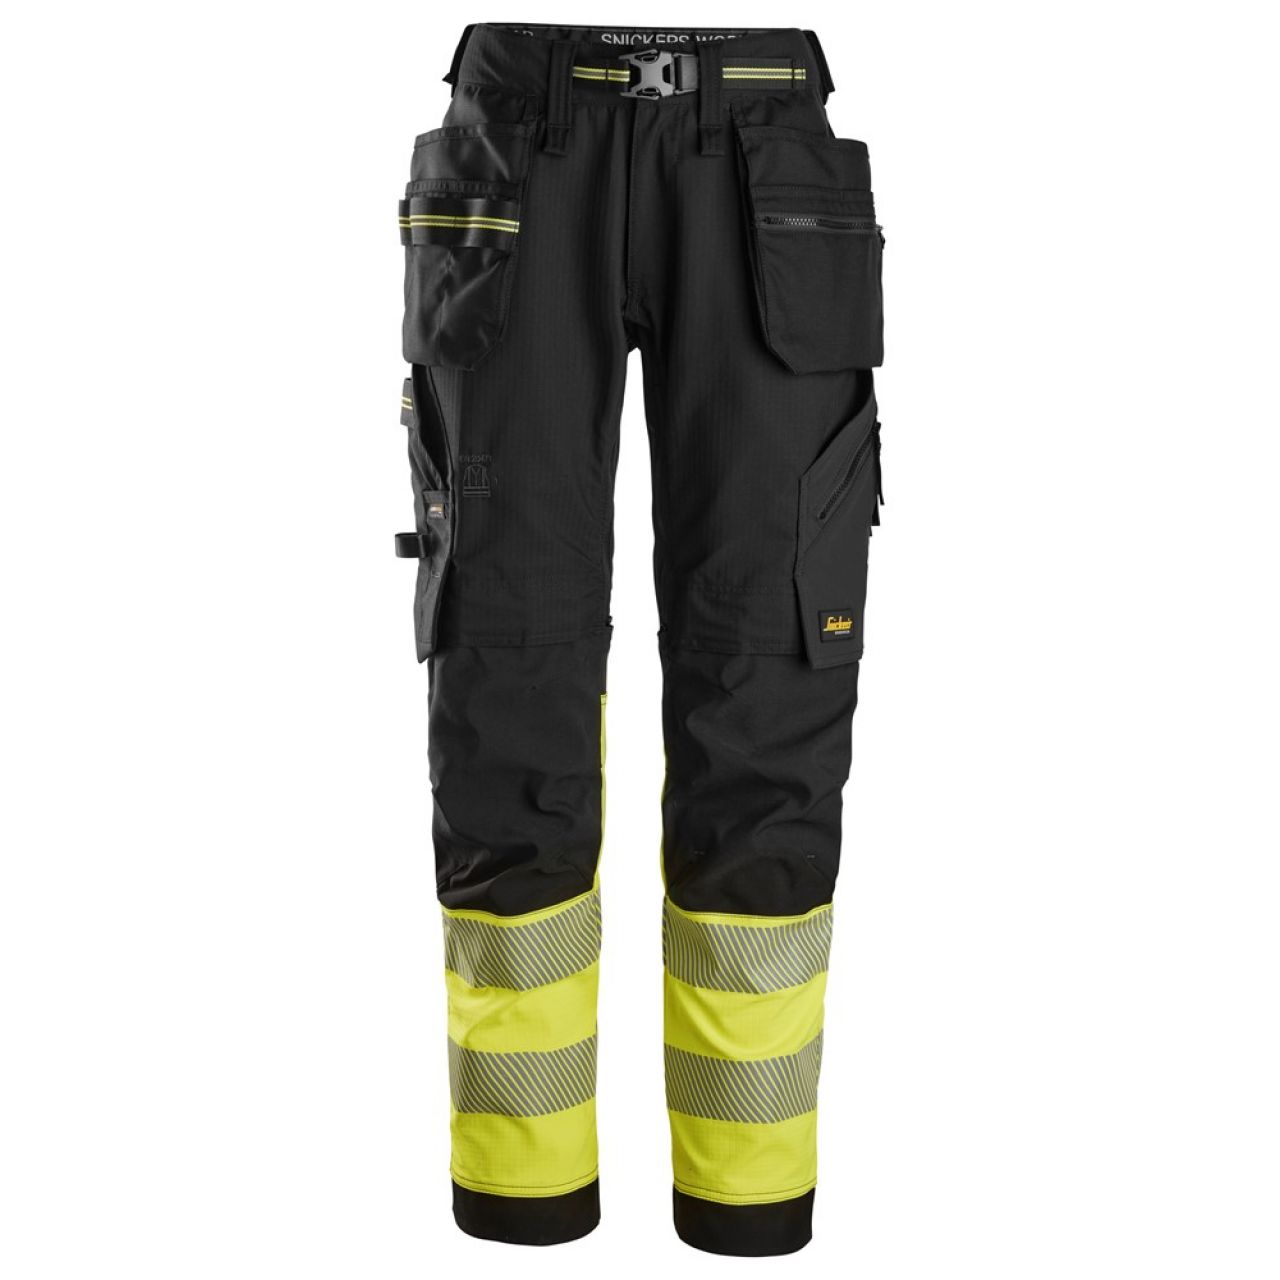 6934 Pantalones largos de trabajo elásticos de alta visibilidad clase 1 con bolsillos flotantes negro-amarillo talla 52